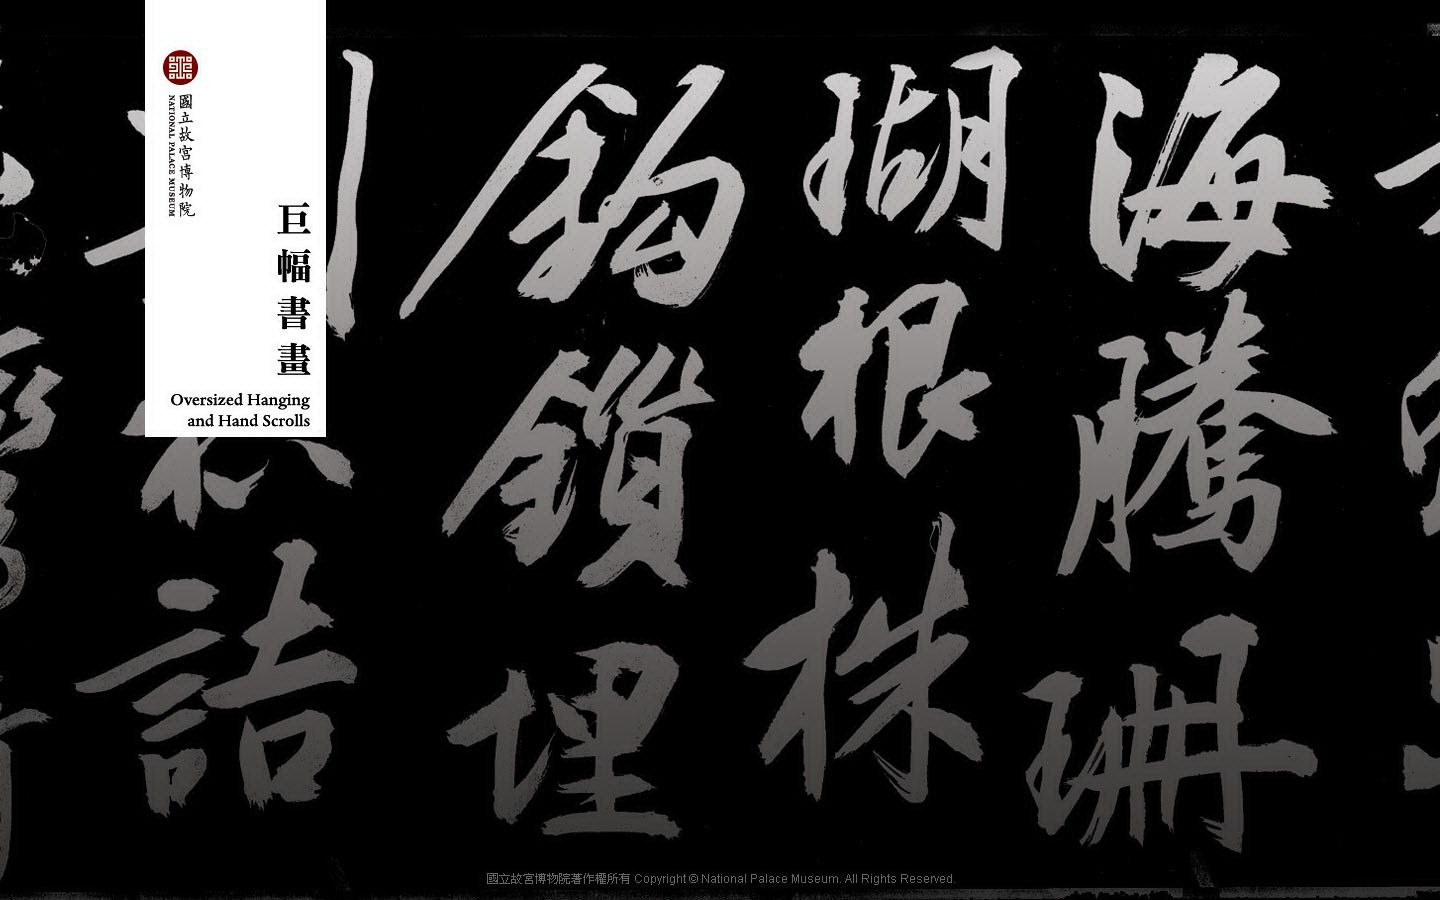 台北故宮博物院 文物展壁紙(二) #14 - 1440x900